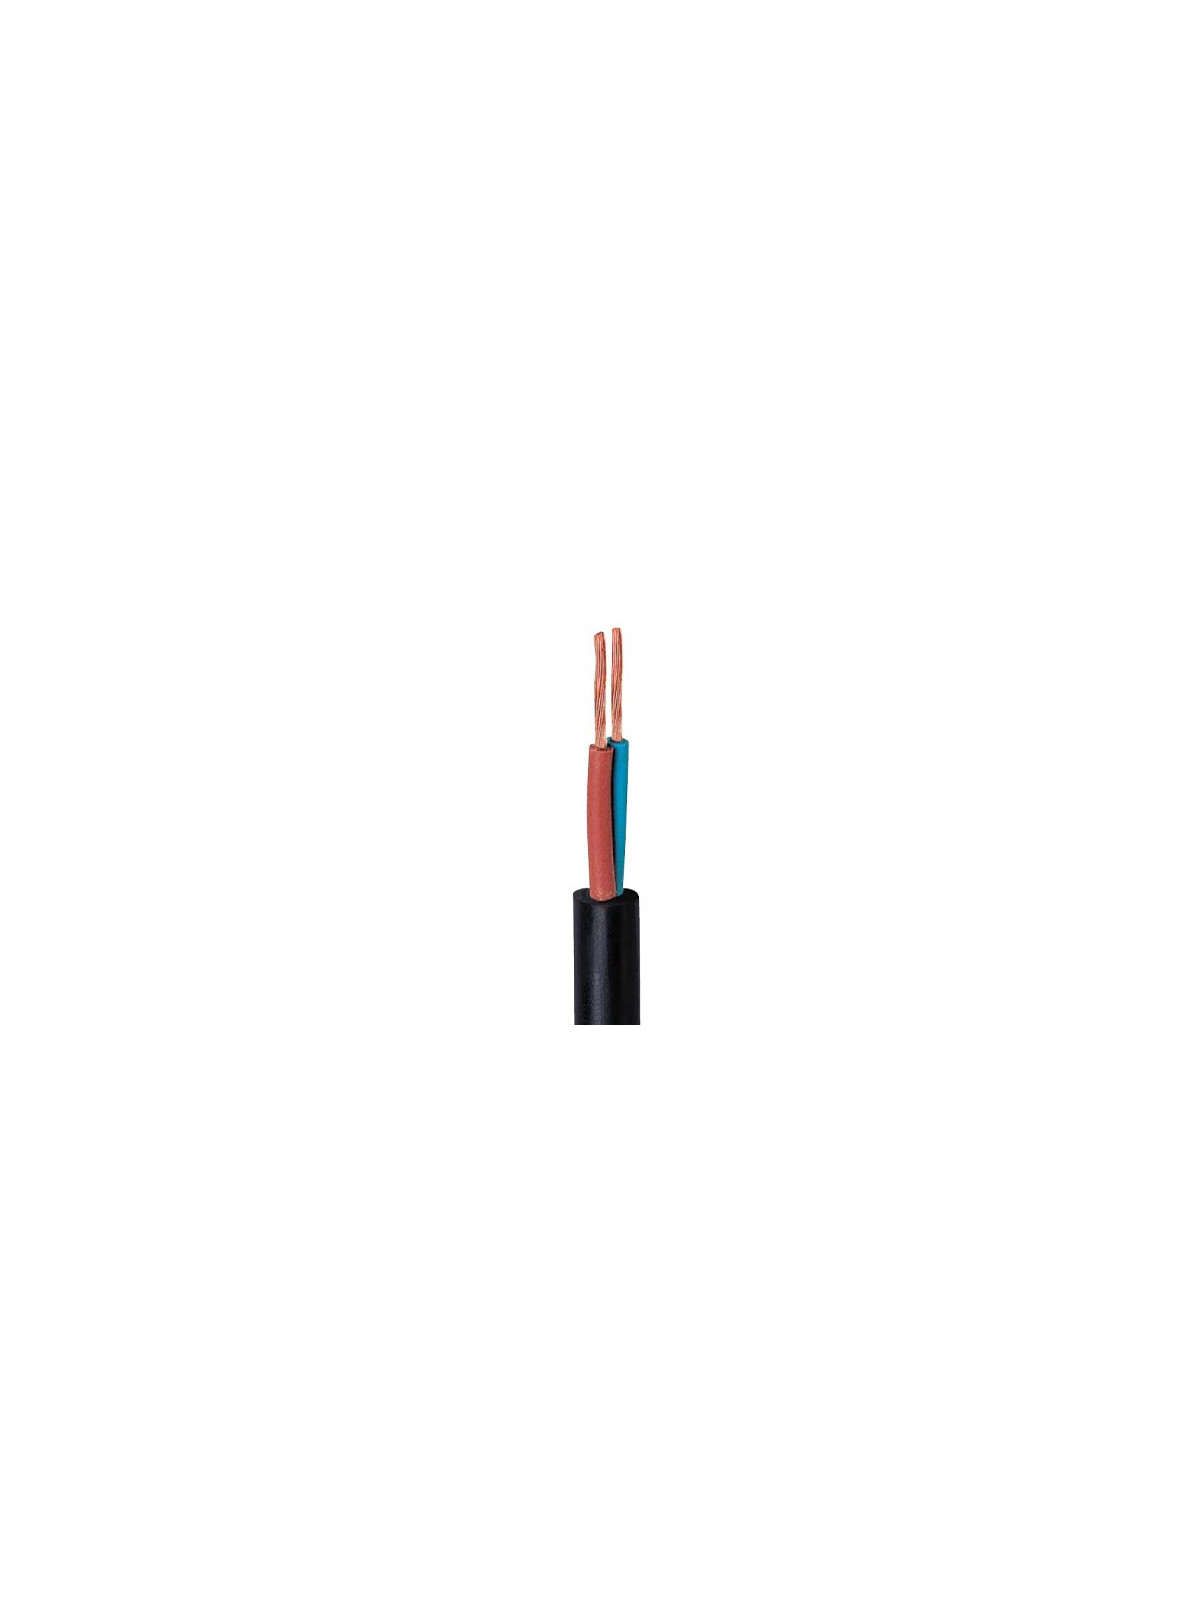 Câble souple H05RR-F 2x0,75mm² - 1m